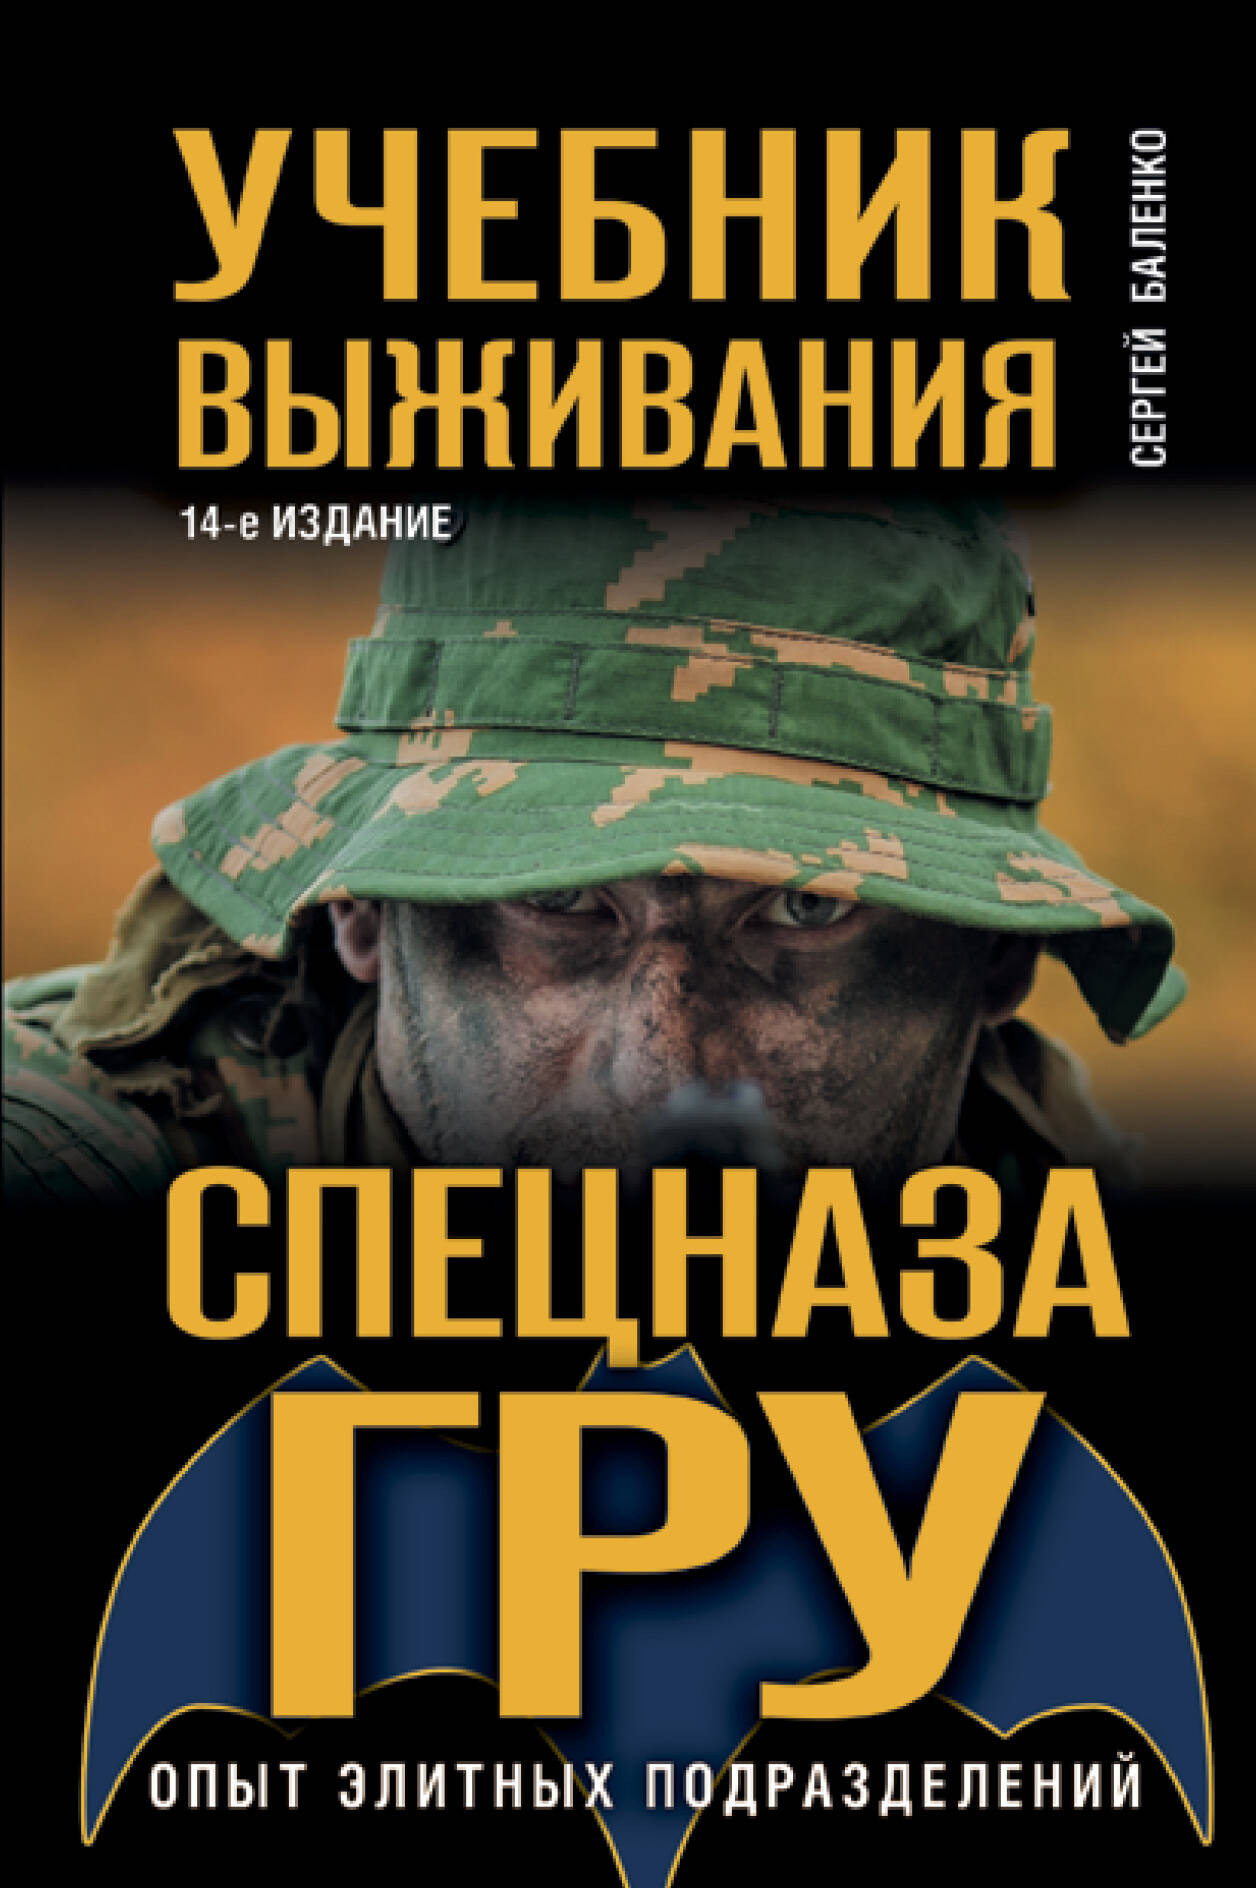 Баленко Сергей Викторович - Учебник выживания спецназа ГРУ. Опыт элитных подразделений.